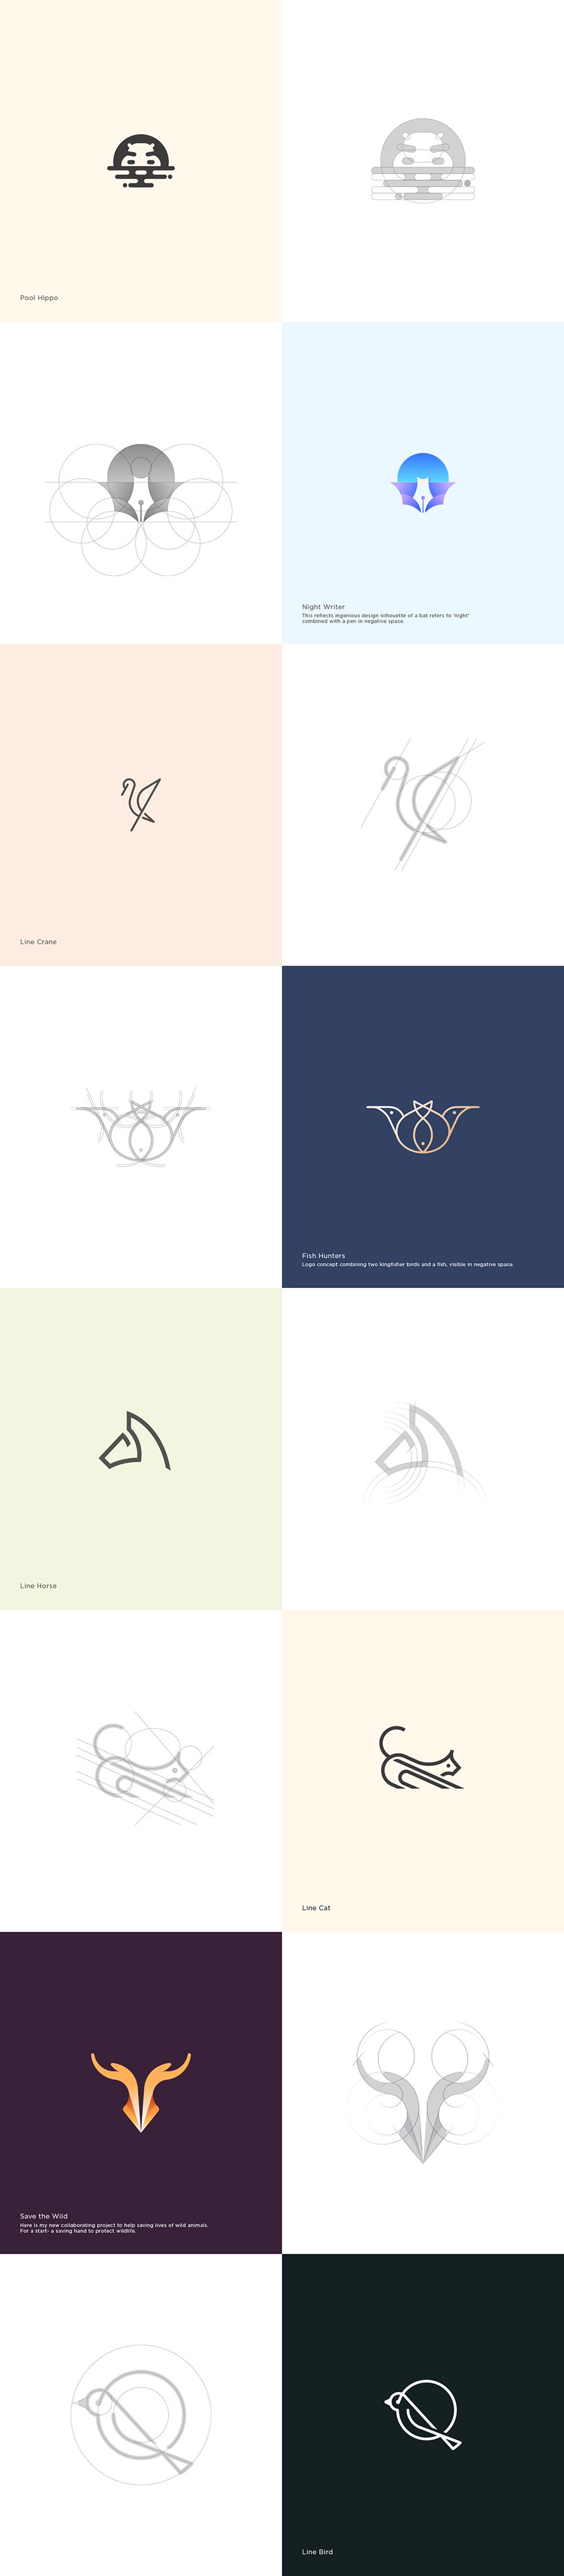 这几种logo设计技巧,适合你的是哪种?